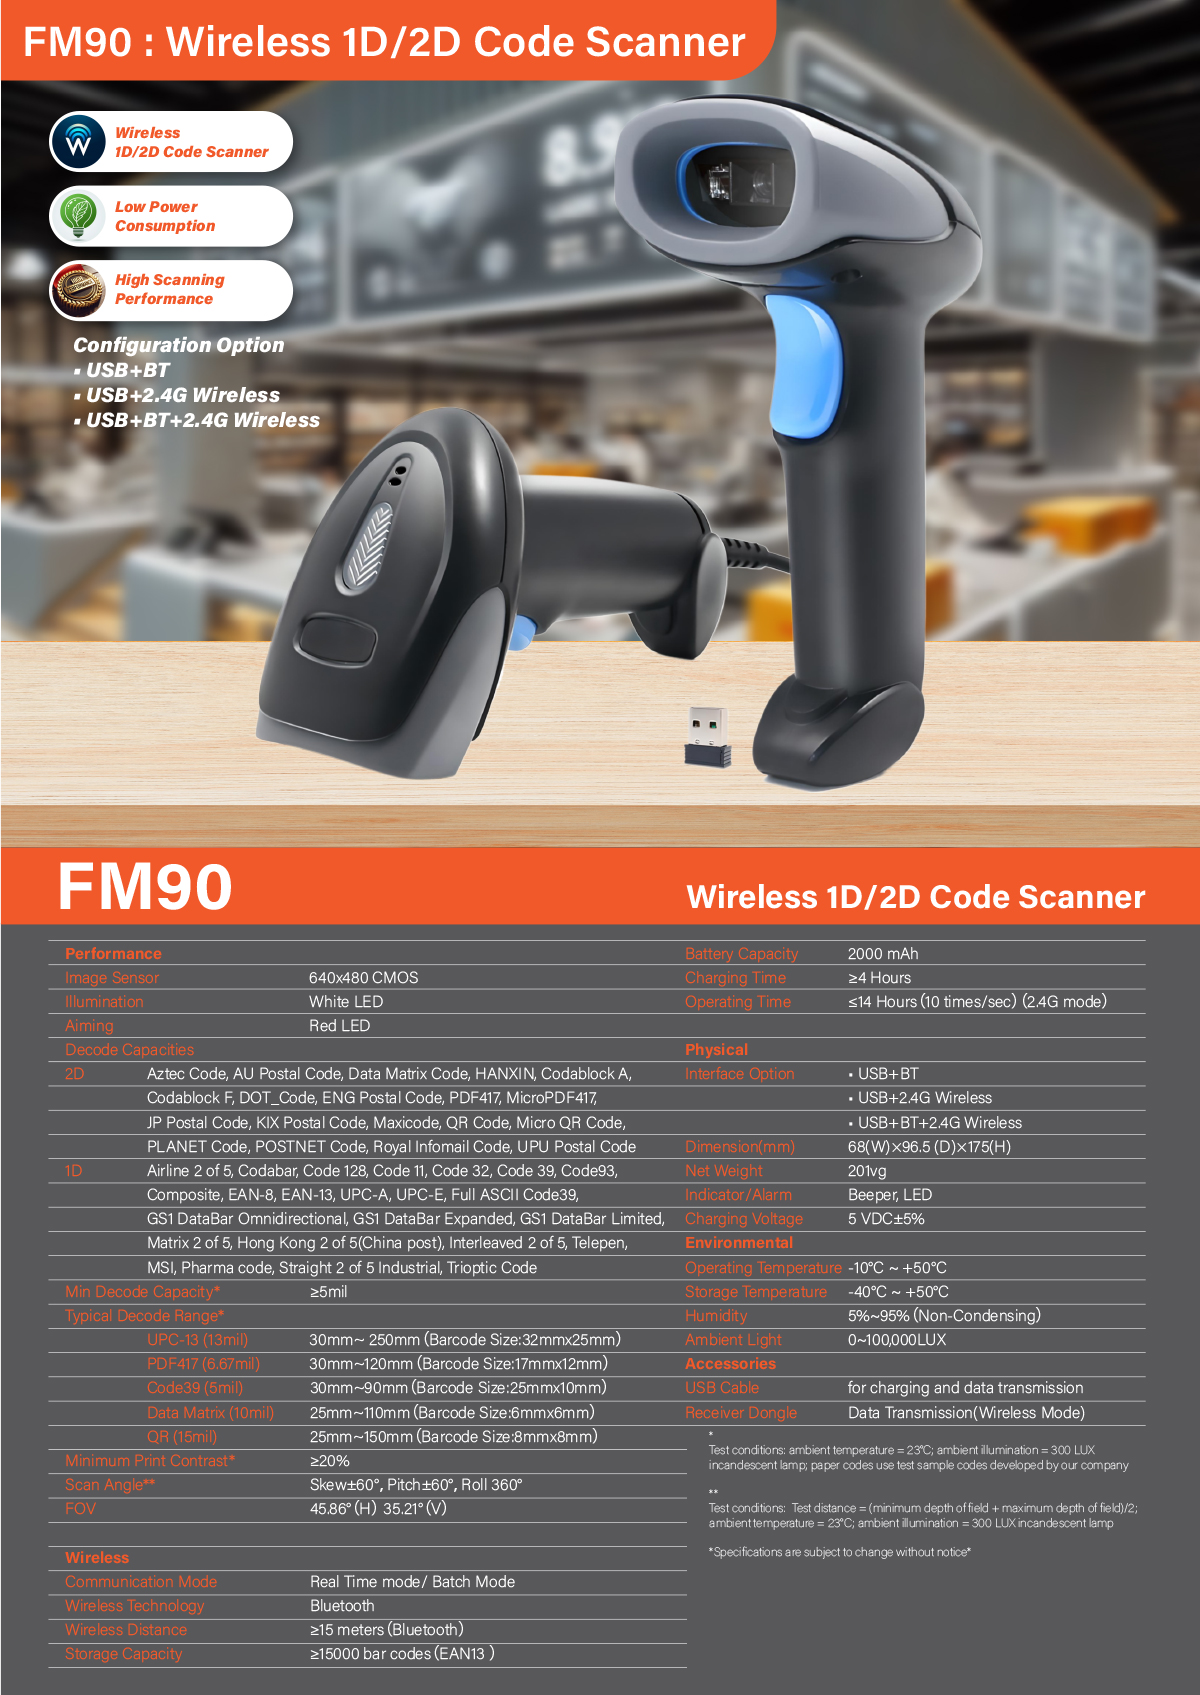 FM90 Wireless 1D&2D Code Scanner